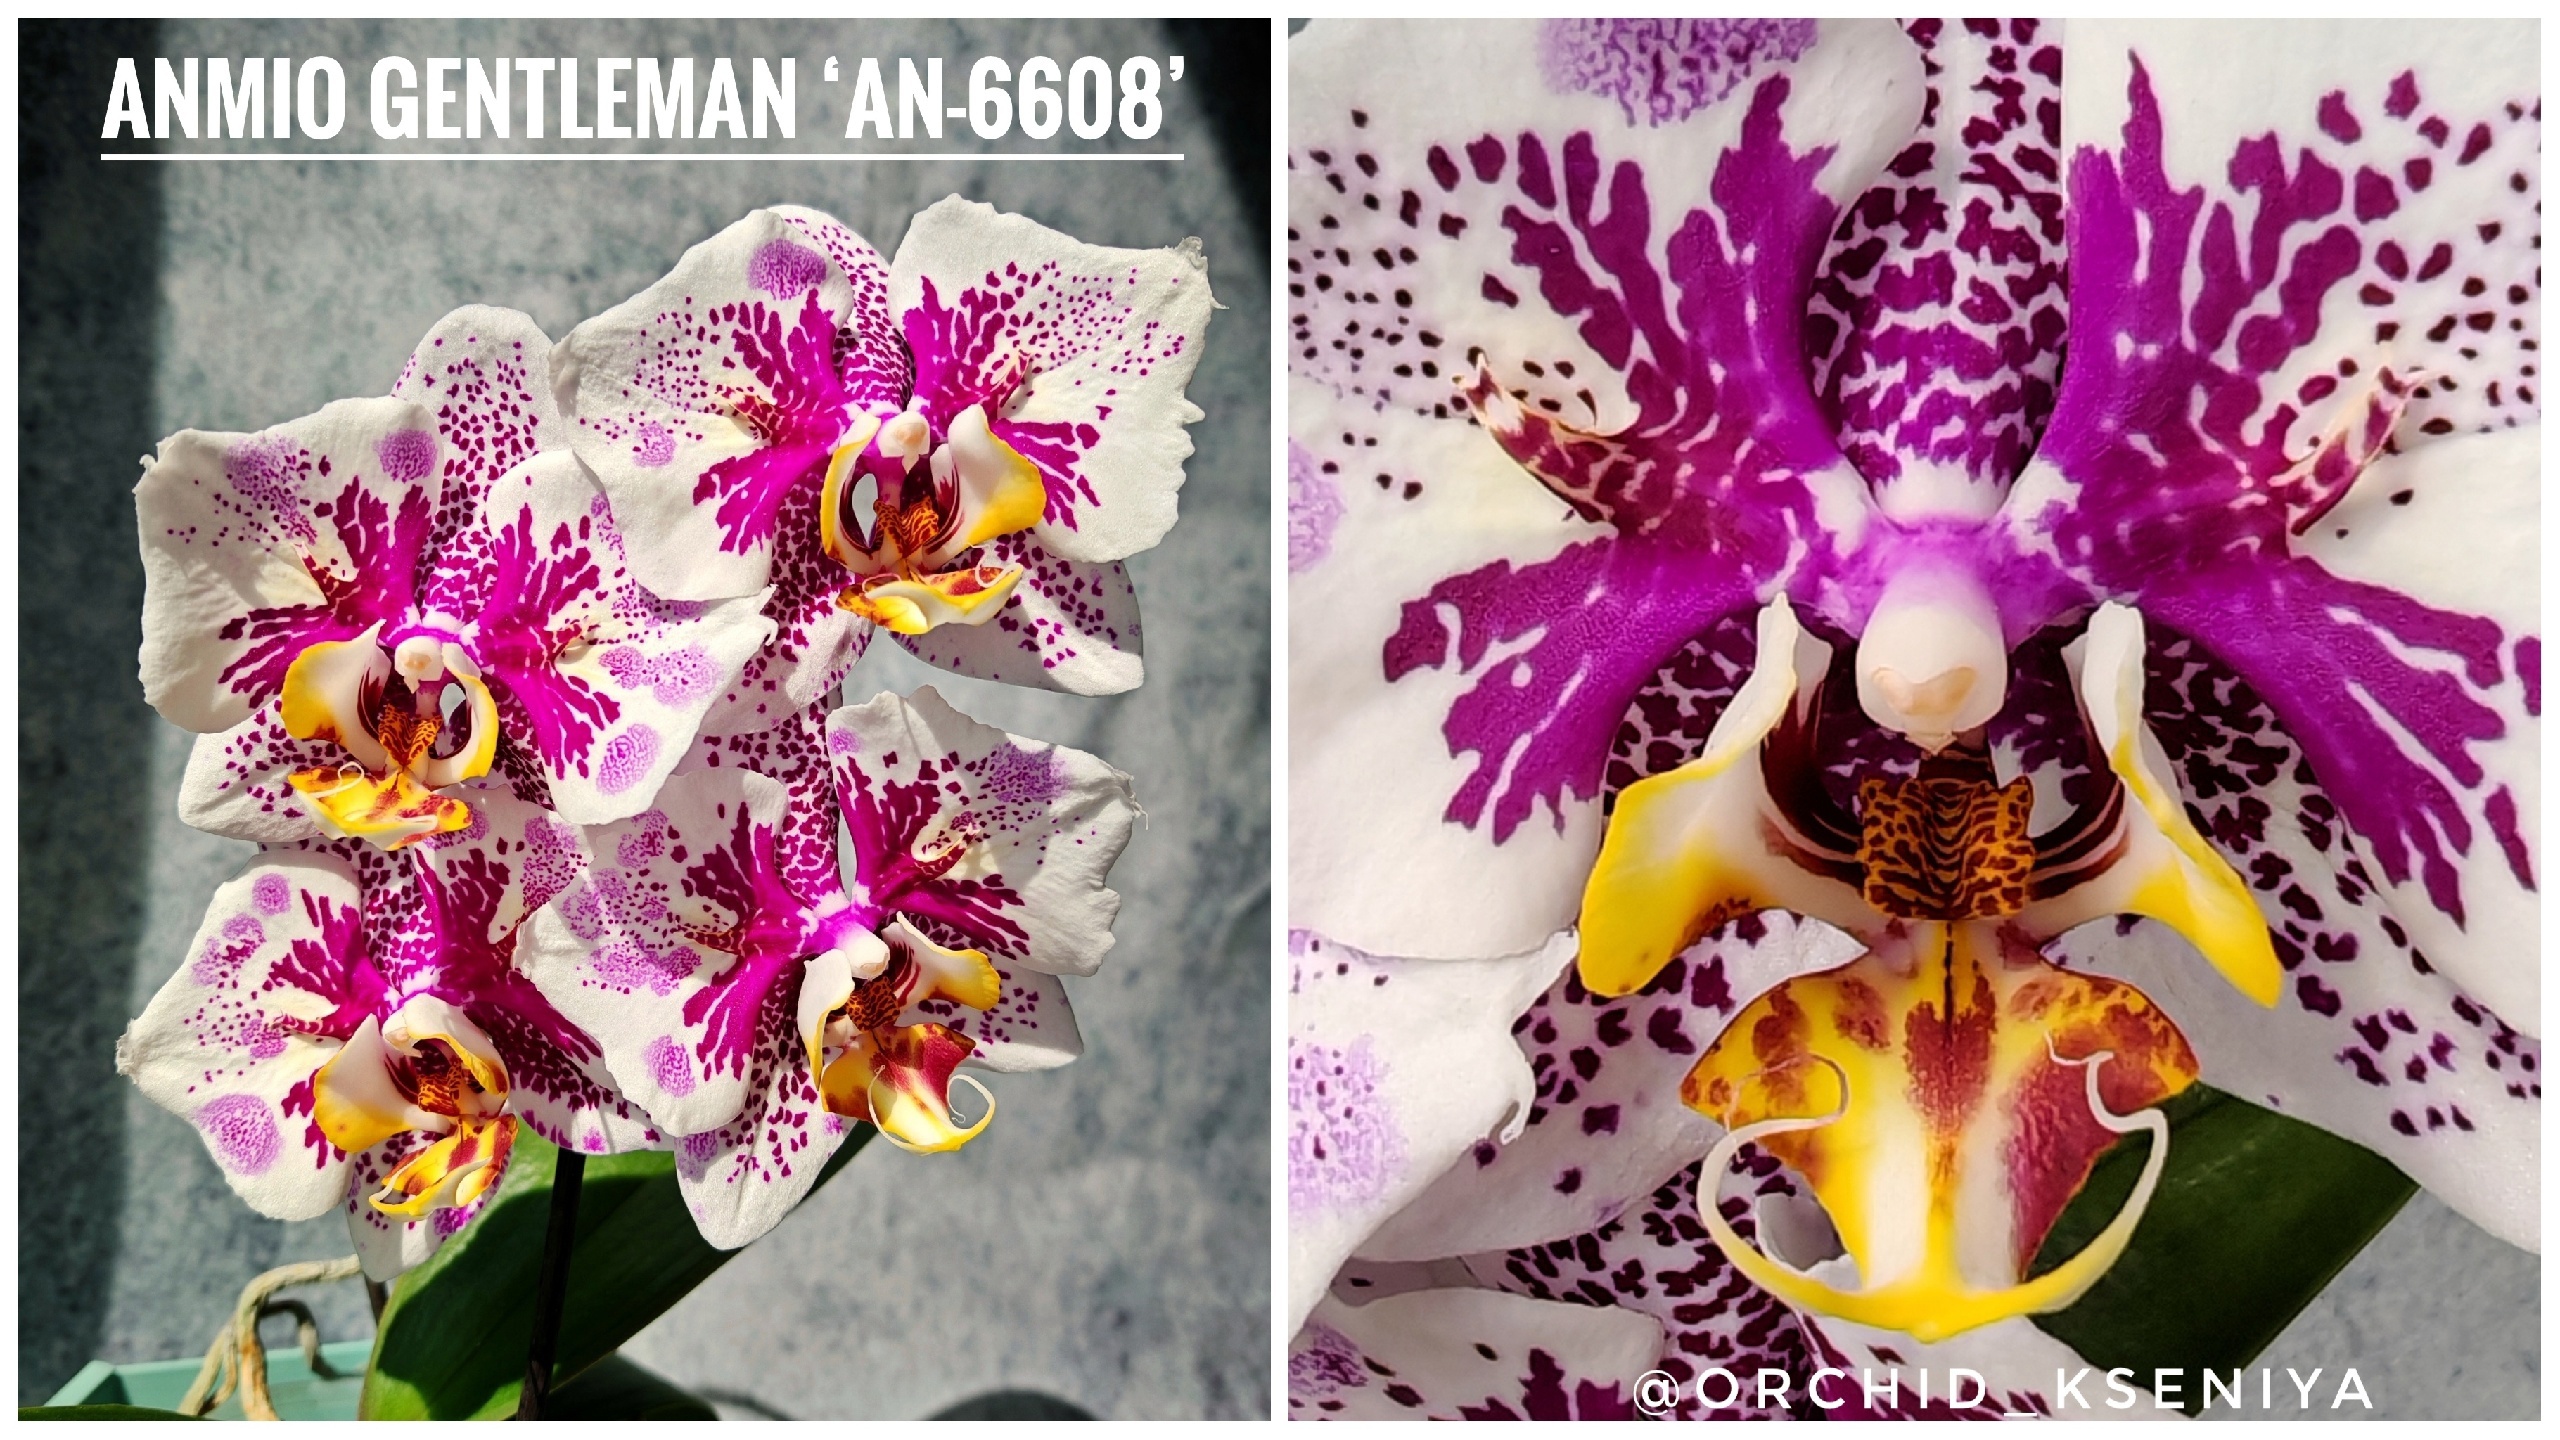 Phal. Anmio Gentleman ‘AN-6608’ 🎩🥸 Второе цветение азиатской орхидеи бабочки Анмио Джентльмен 🌺